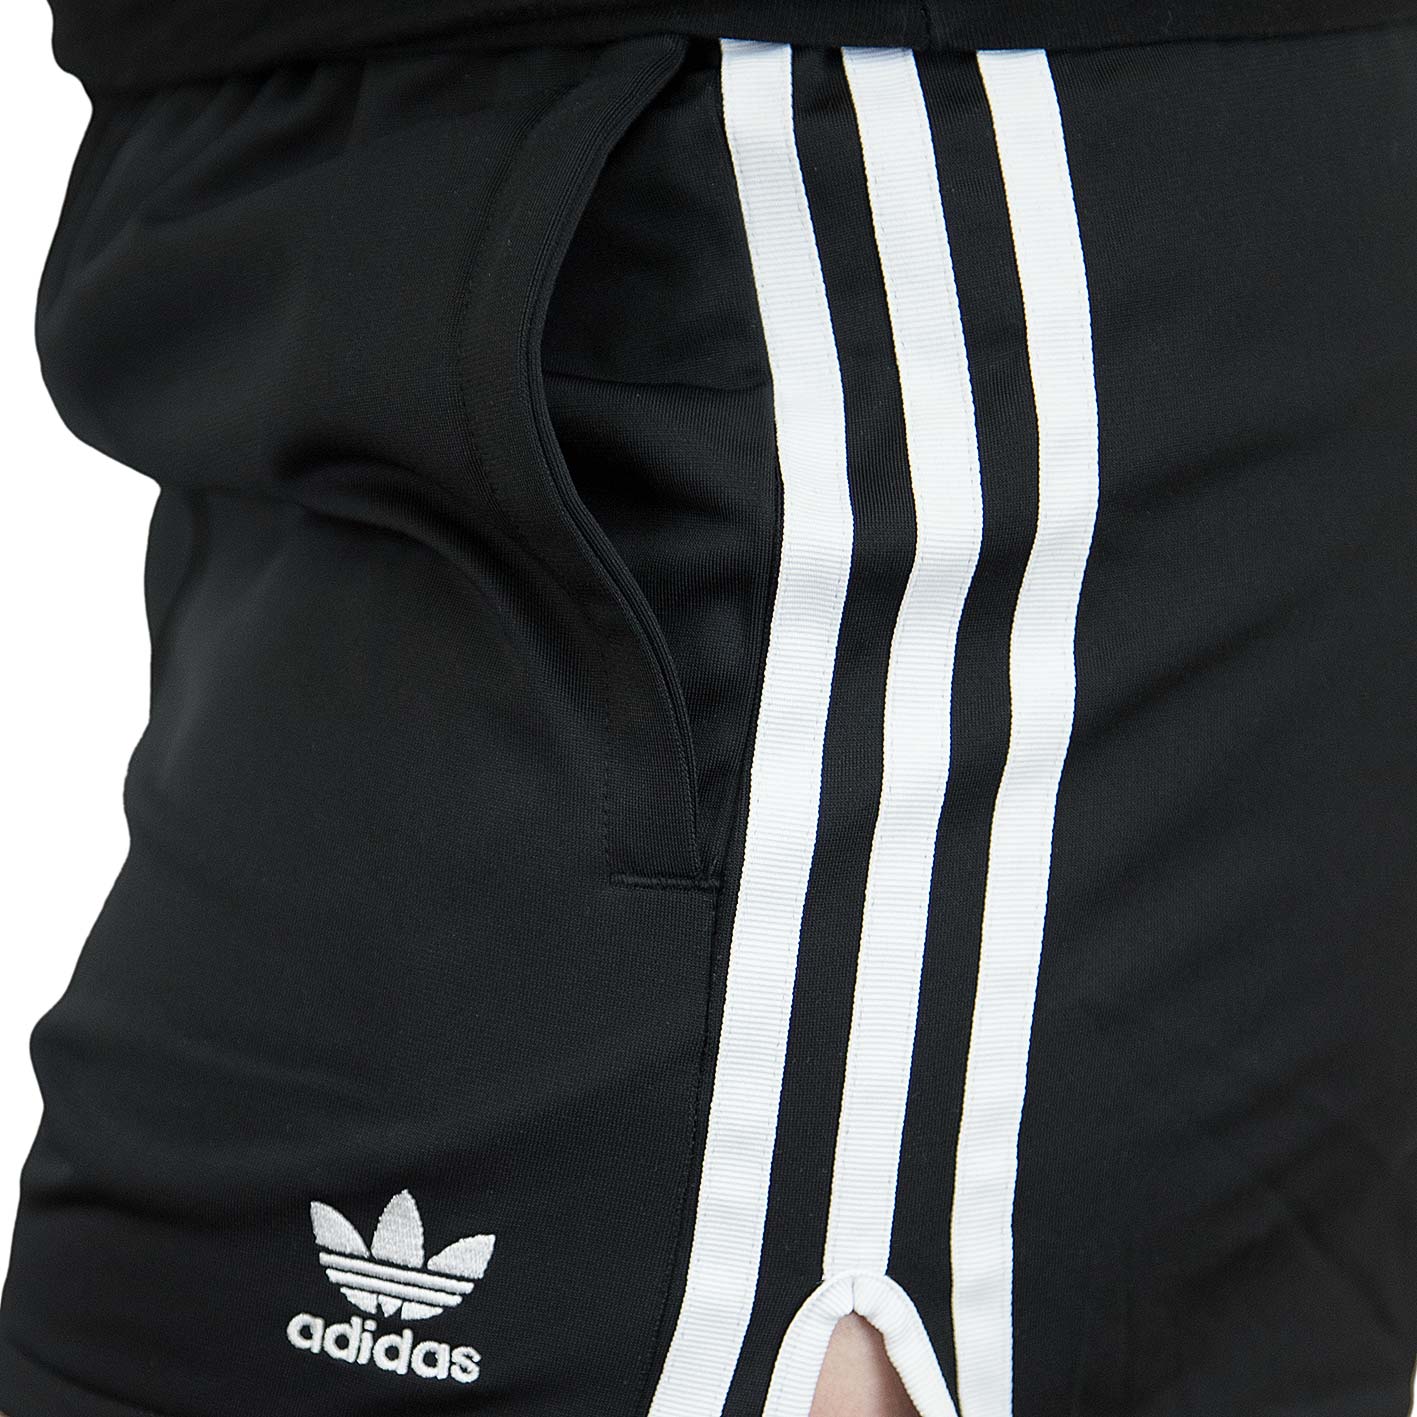 ☆ Adidas Originals Damen Shorts 3 Stripes schwarz - hier bestellen!